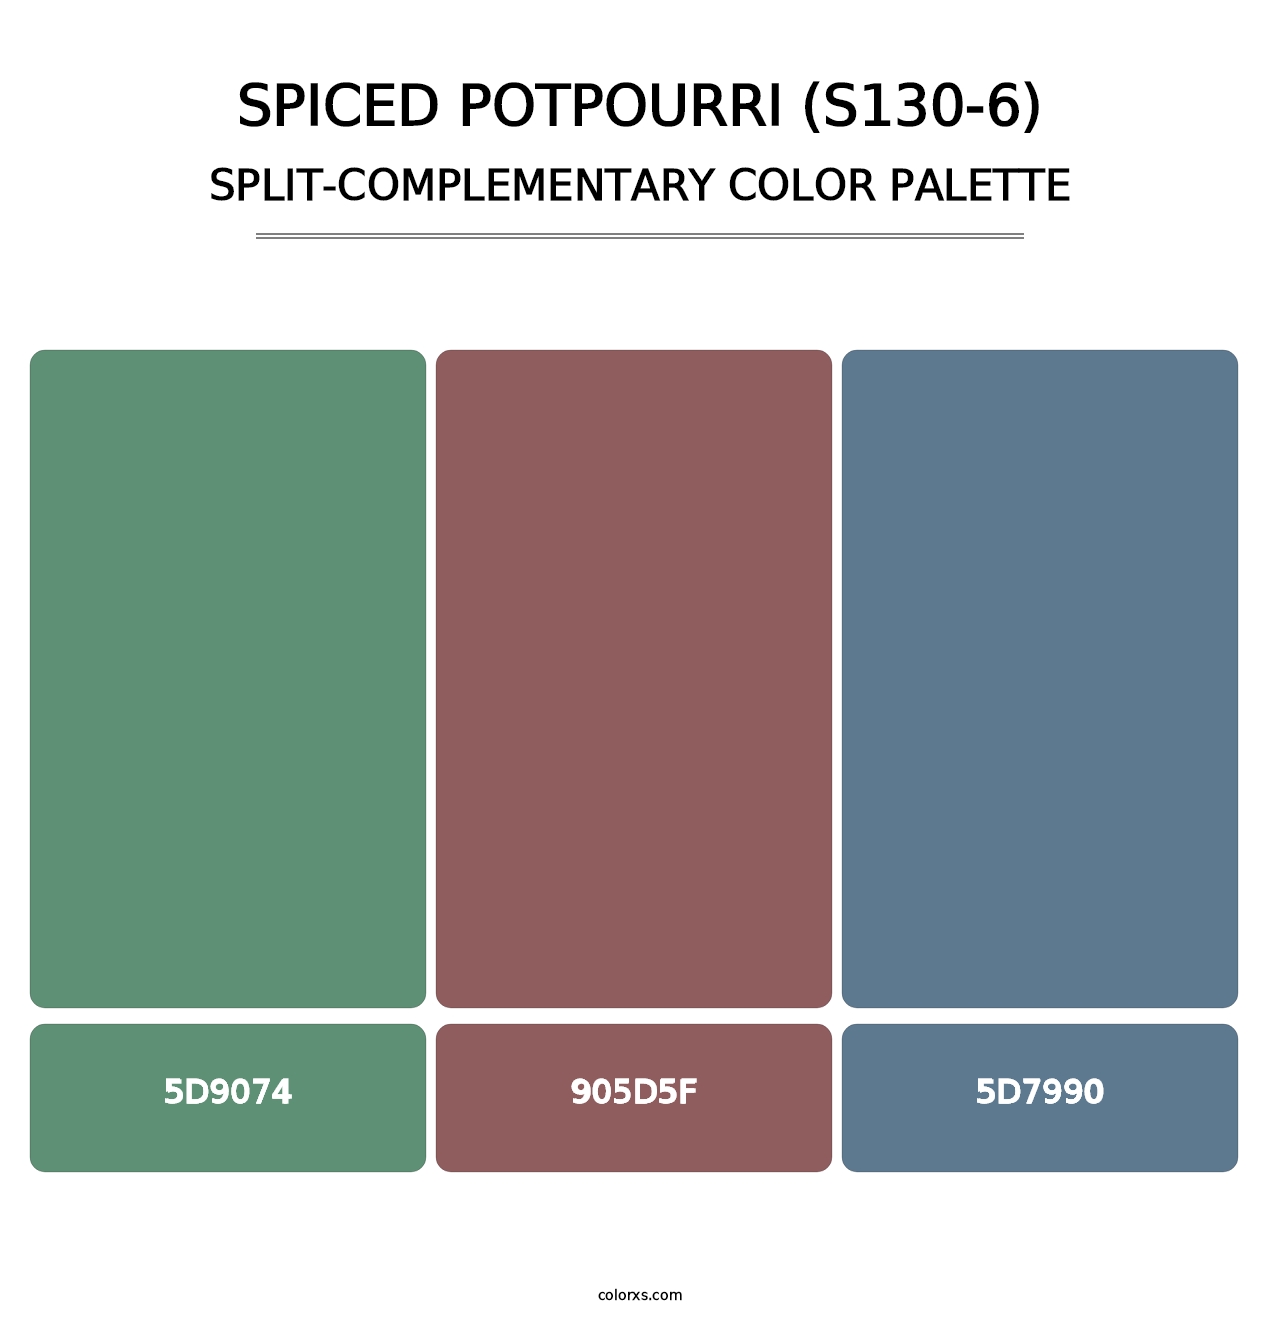 Spiced Potpourri (S130-6) - Split-Complementary Color Palette